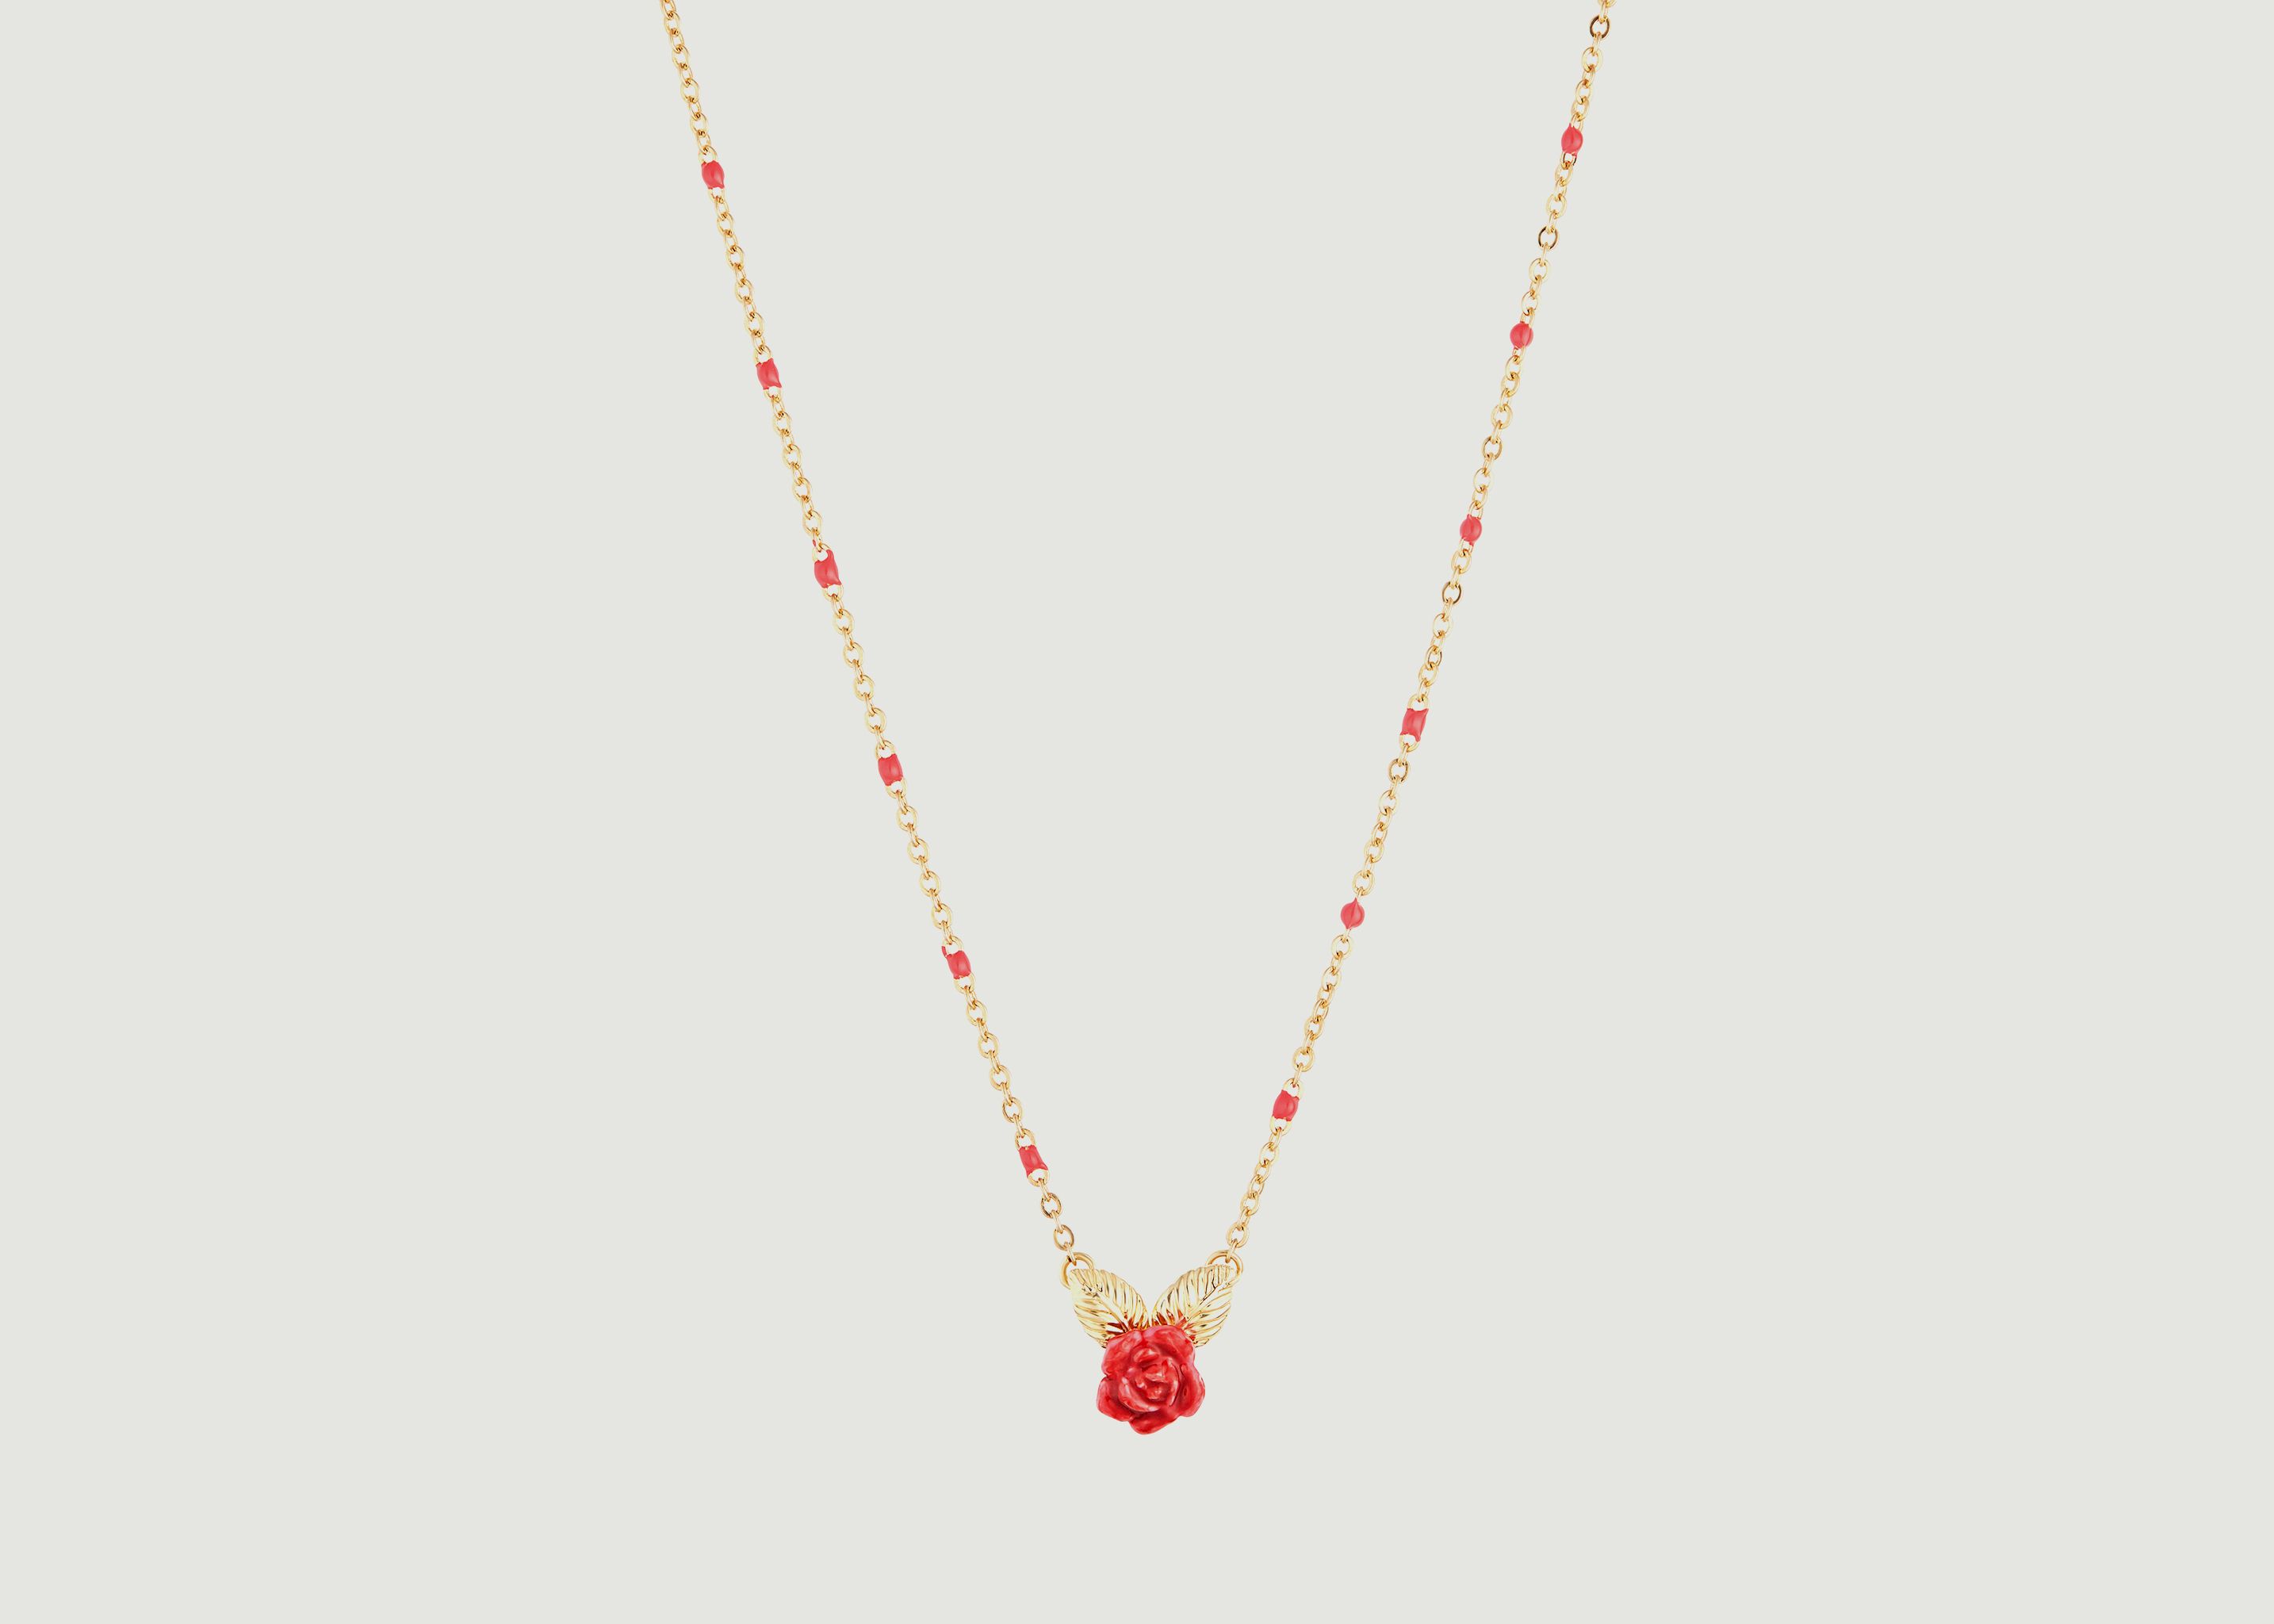 Rose bud pendant necklace - Les Néréides